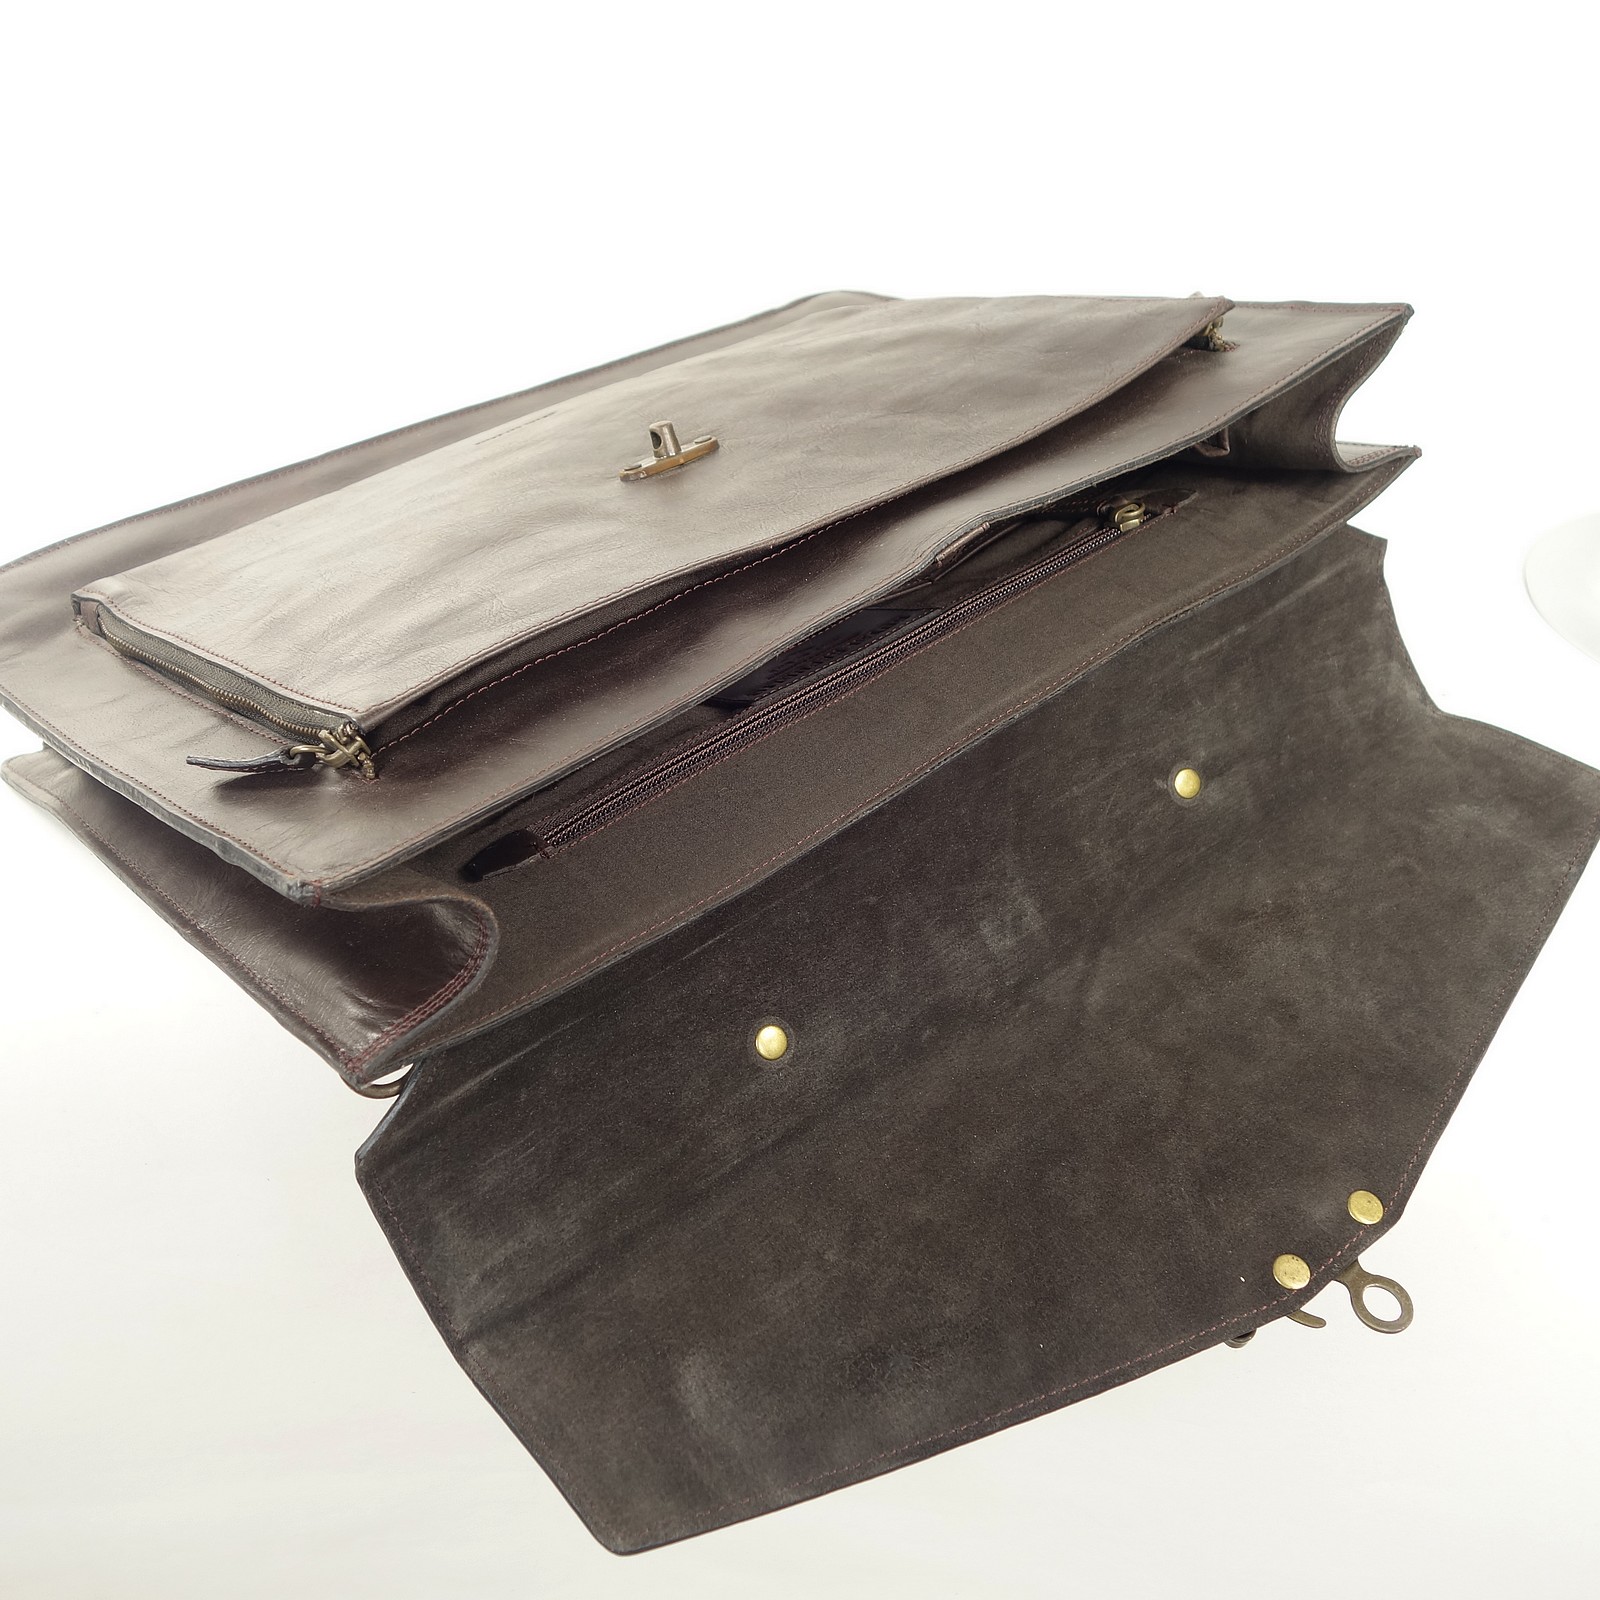 Sacoche cuir pc portable 16' & bandoulière / Royal republiq